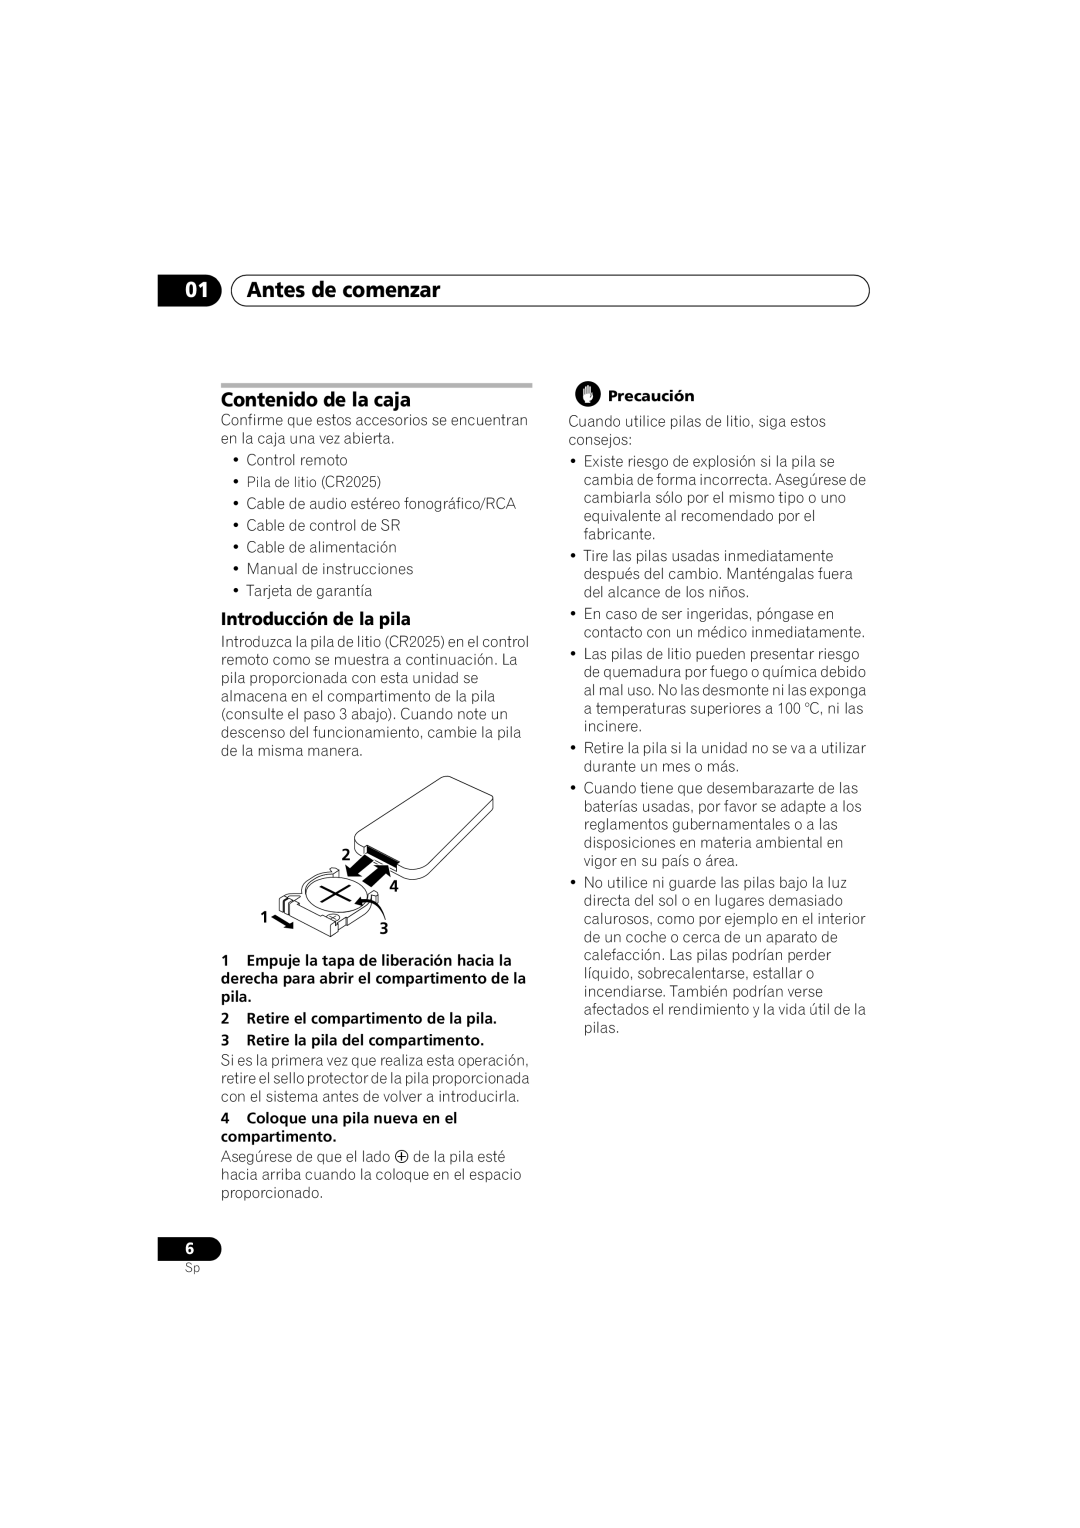 Pioneer PD-D6-J manual 01Antes de comenzar, Contenido de la caja, Introducción de la pila 